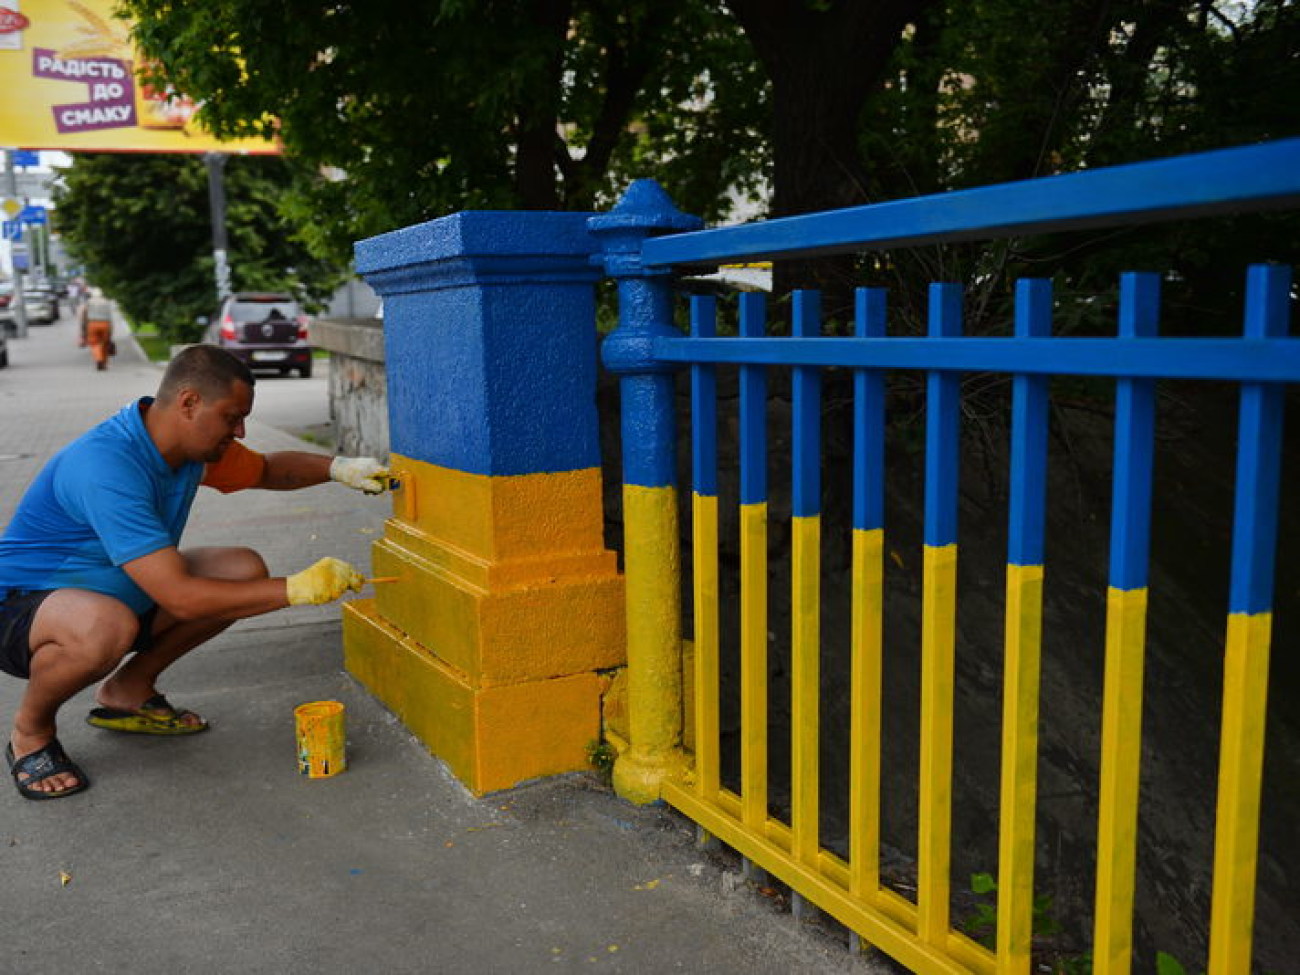 Ко Дню Независимости Киев раскрашивают в национальные цвета, 29 июля 2014г.